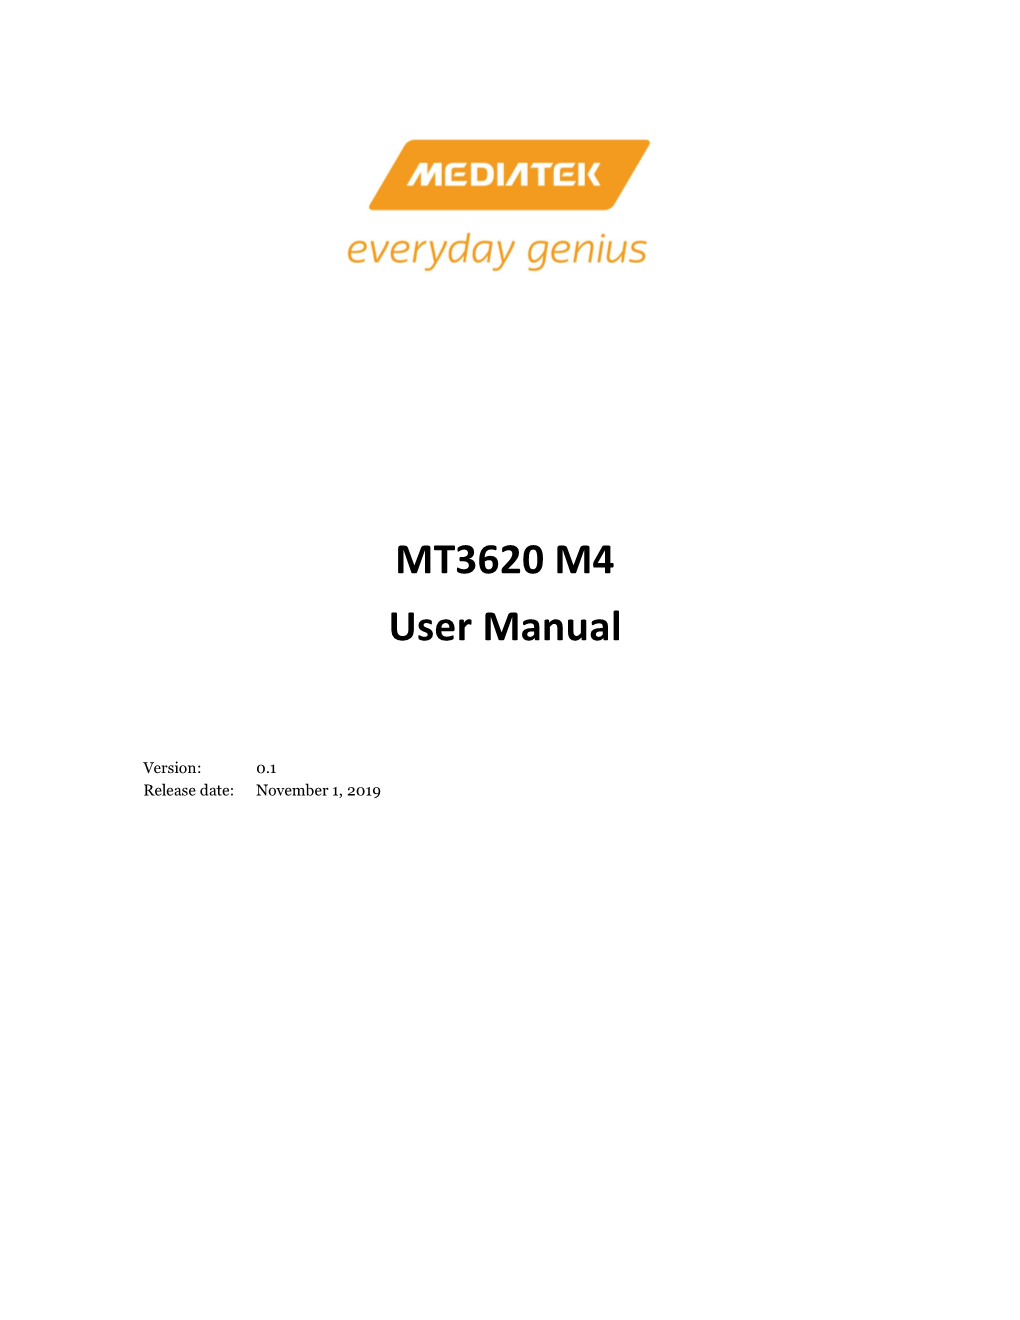 MT3620 M4 User Manual